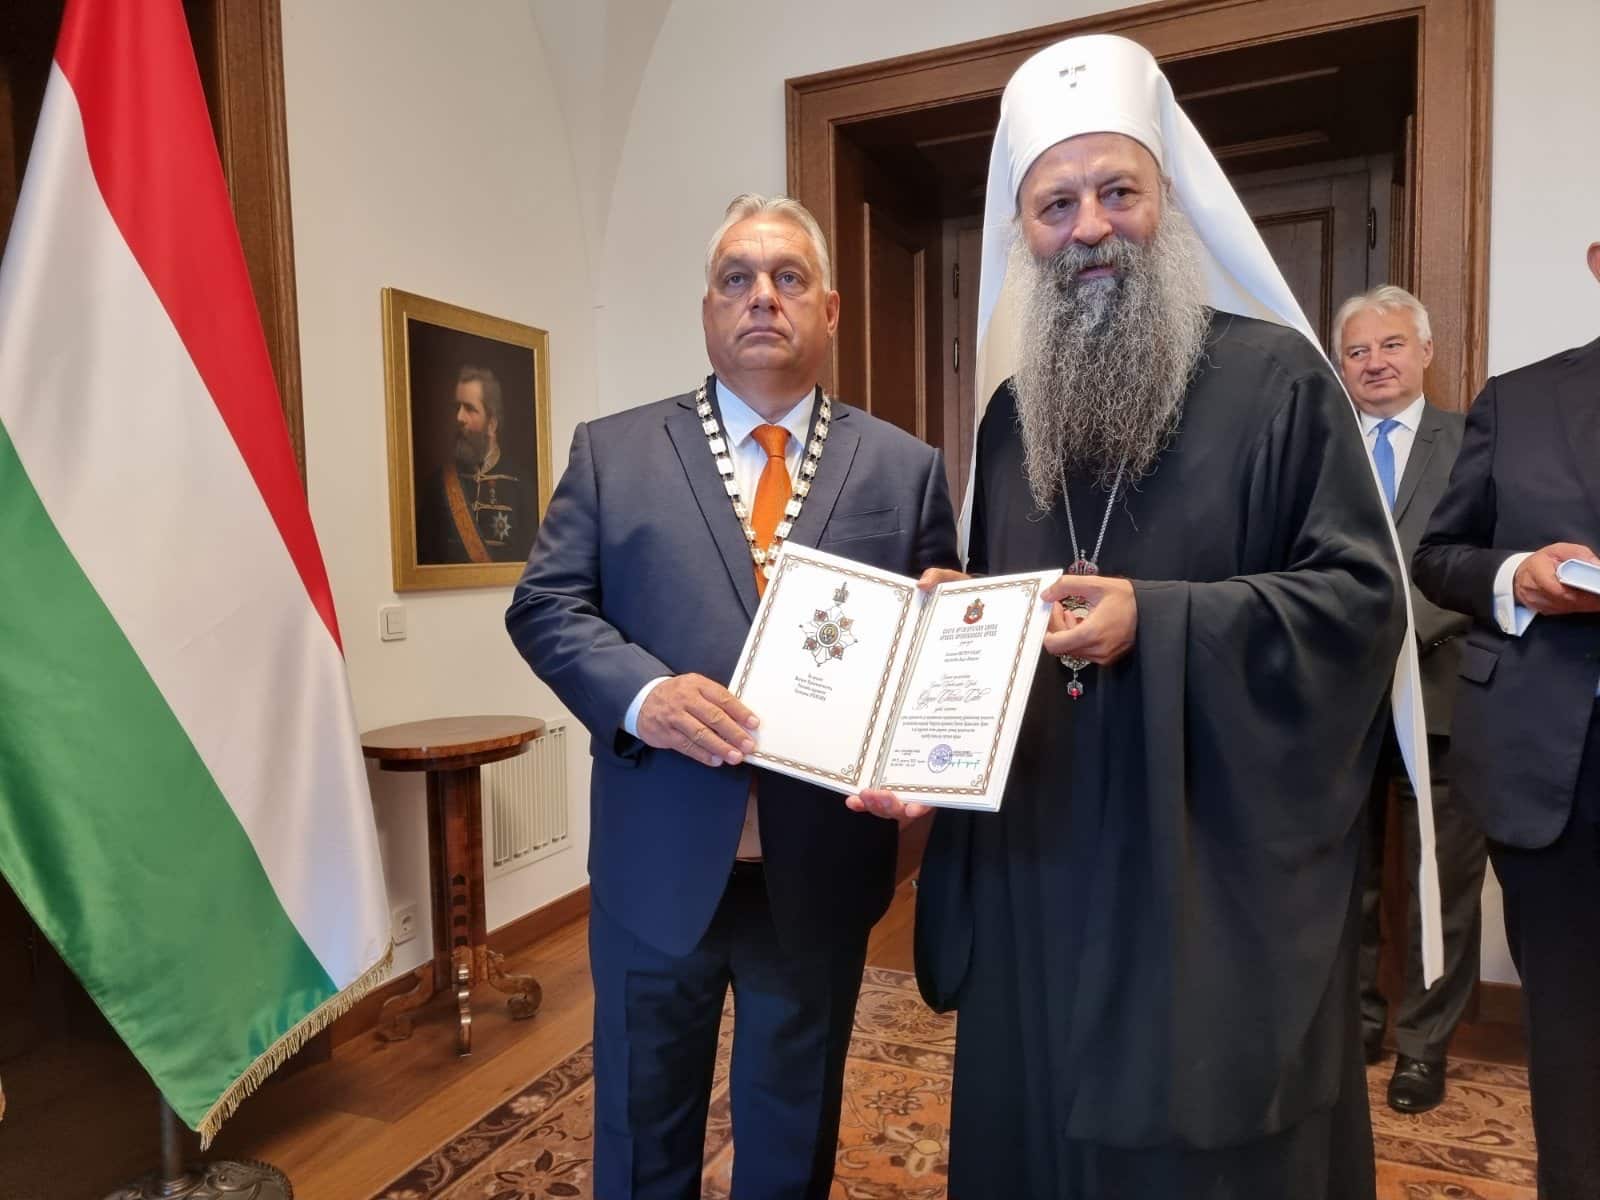 Le patriarche de serbie porphyre a décoré de l’ordre de saint sava le premier ministre hongrois victor orbán pour sa défense des valeurs chrétiennes 